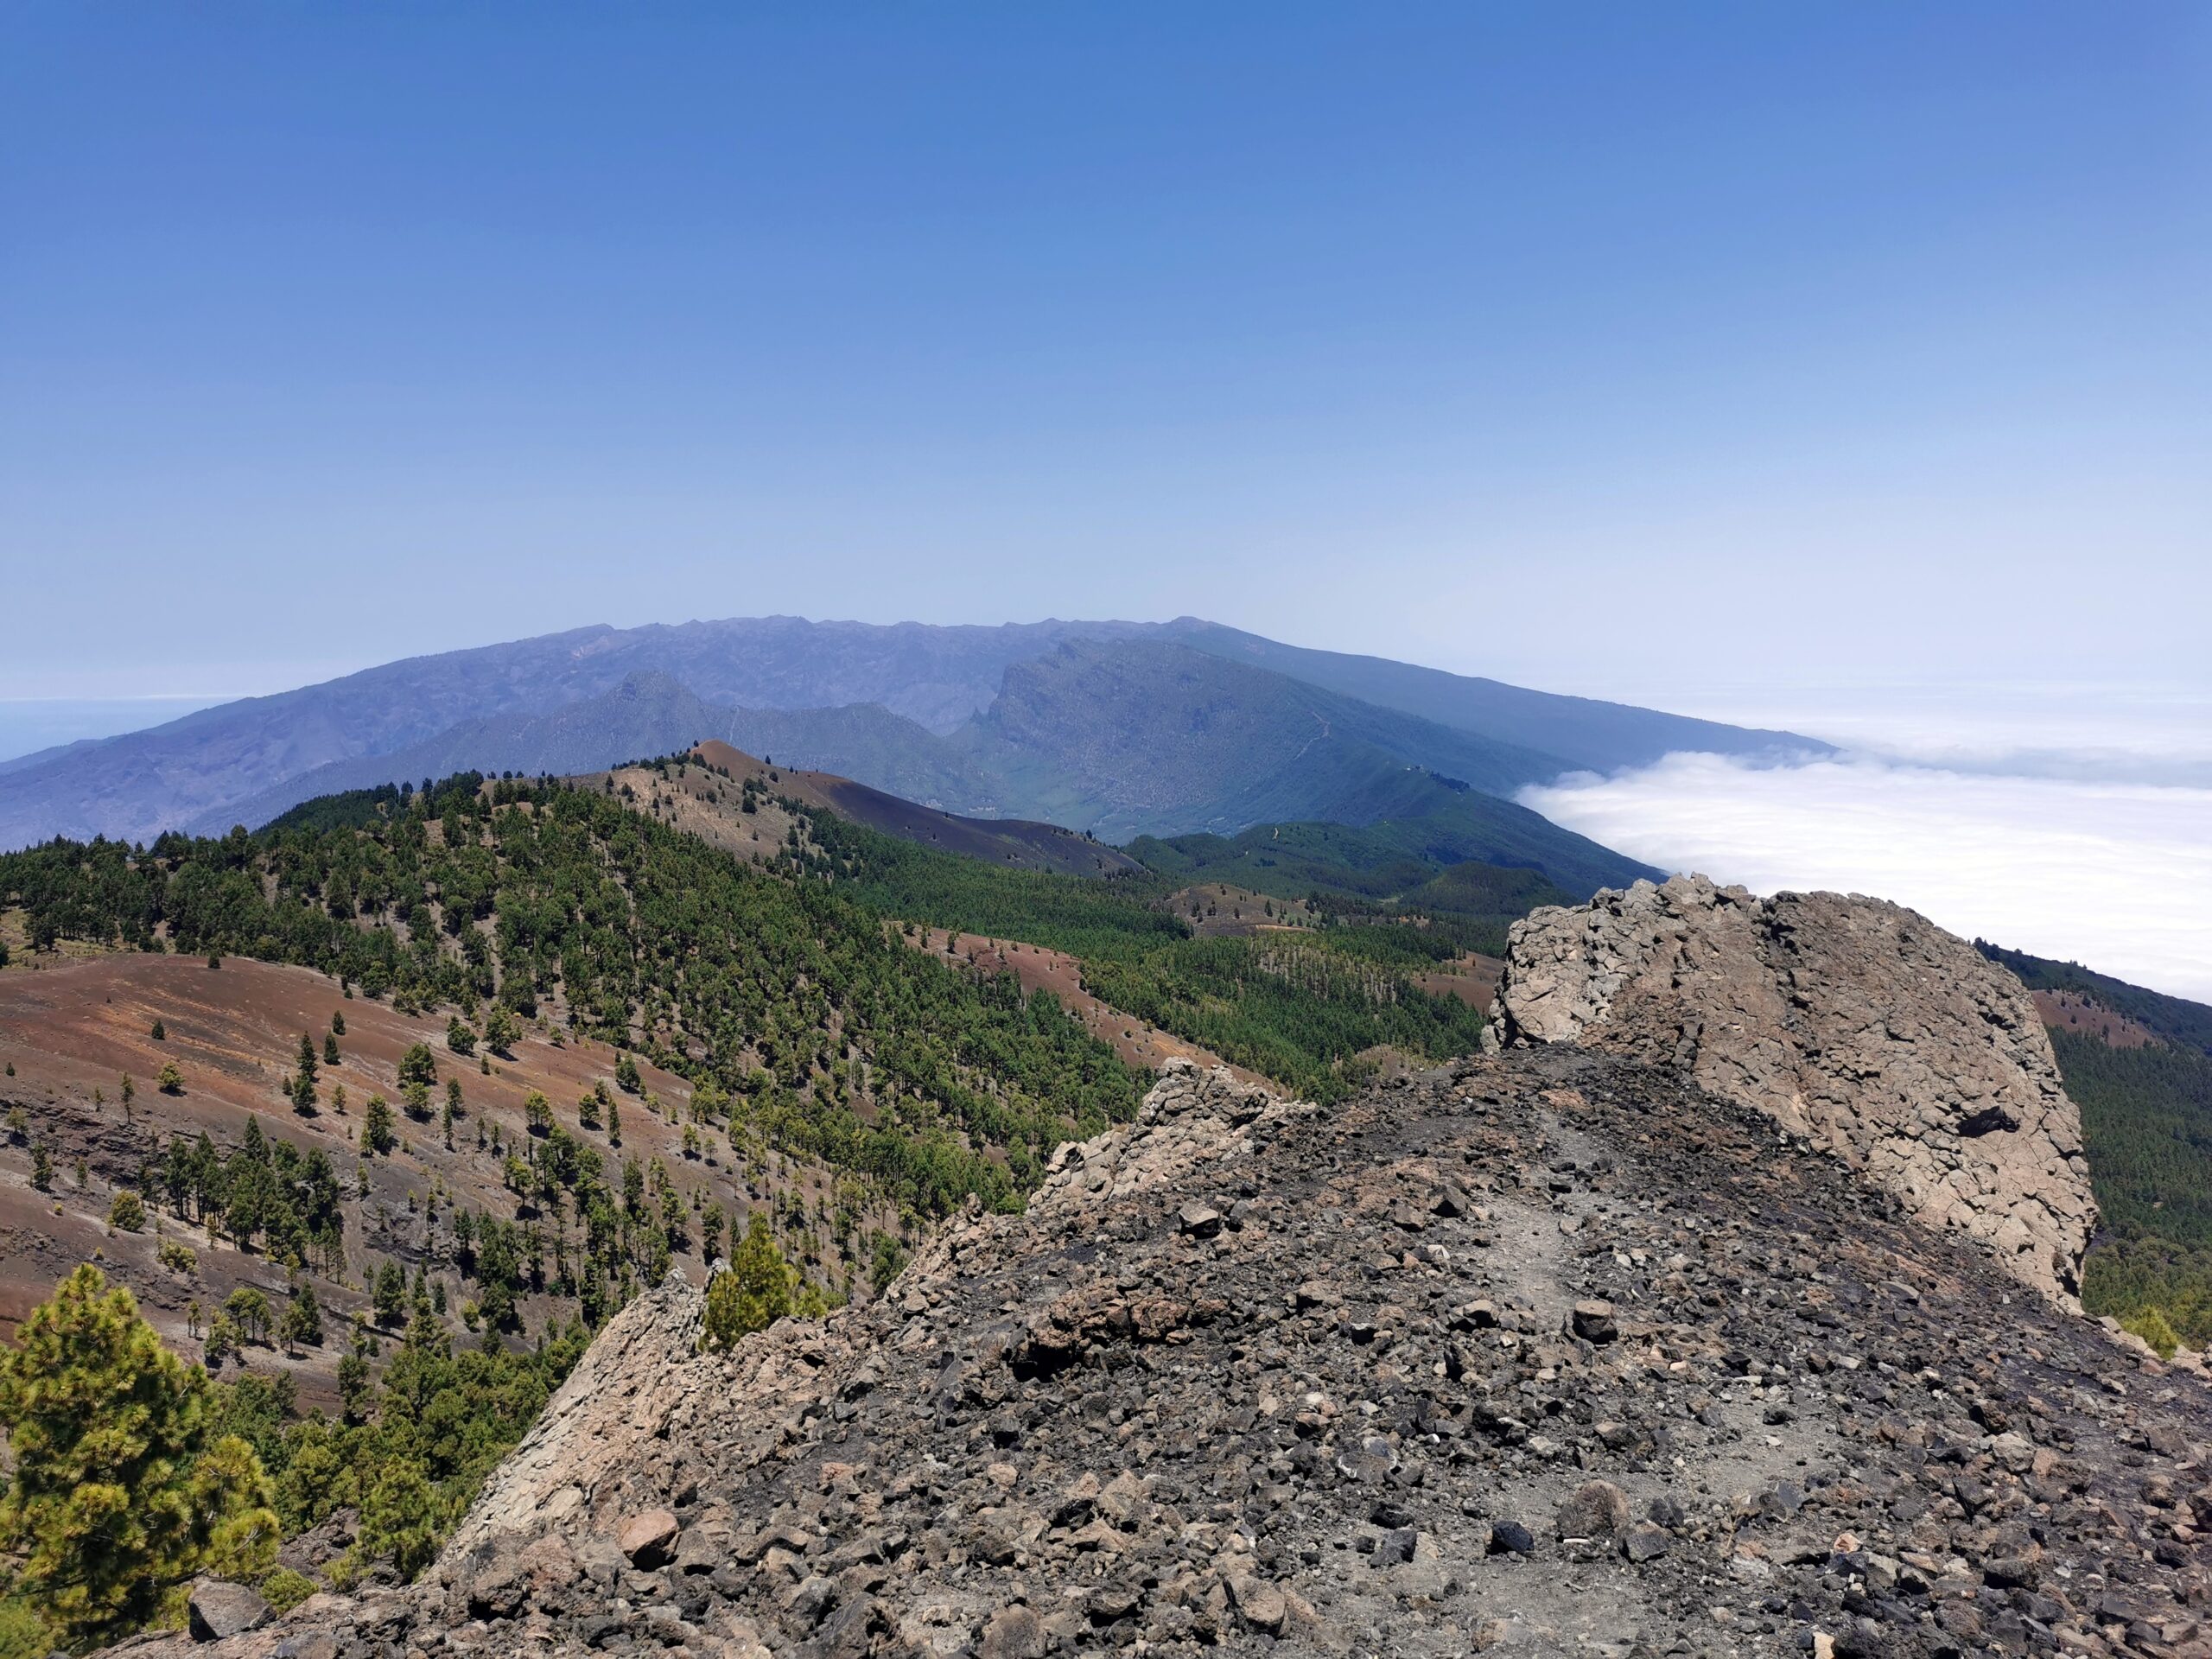 Szczyt Nambroque na "ruta de los volcanes" (trasa wulkanów - route of the volcanos) na wyspie La Palma (Wyspy Kanaryjskie, Hiszpania), licencja: shutterstock/By Christian Kaehler